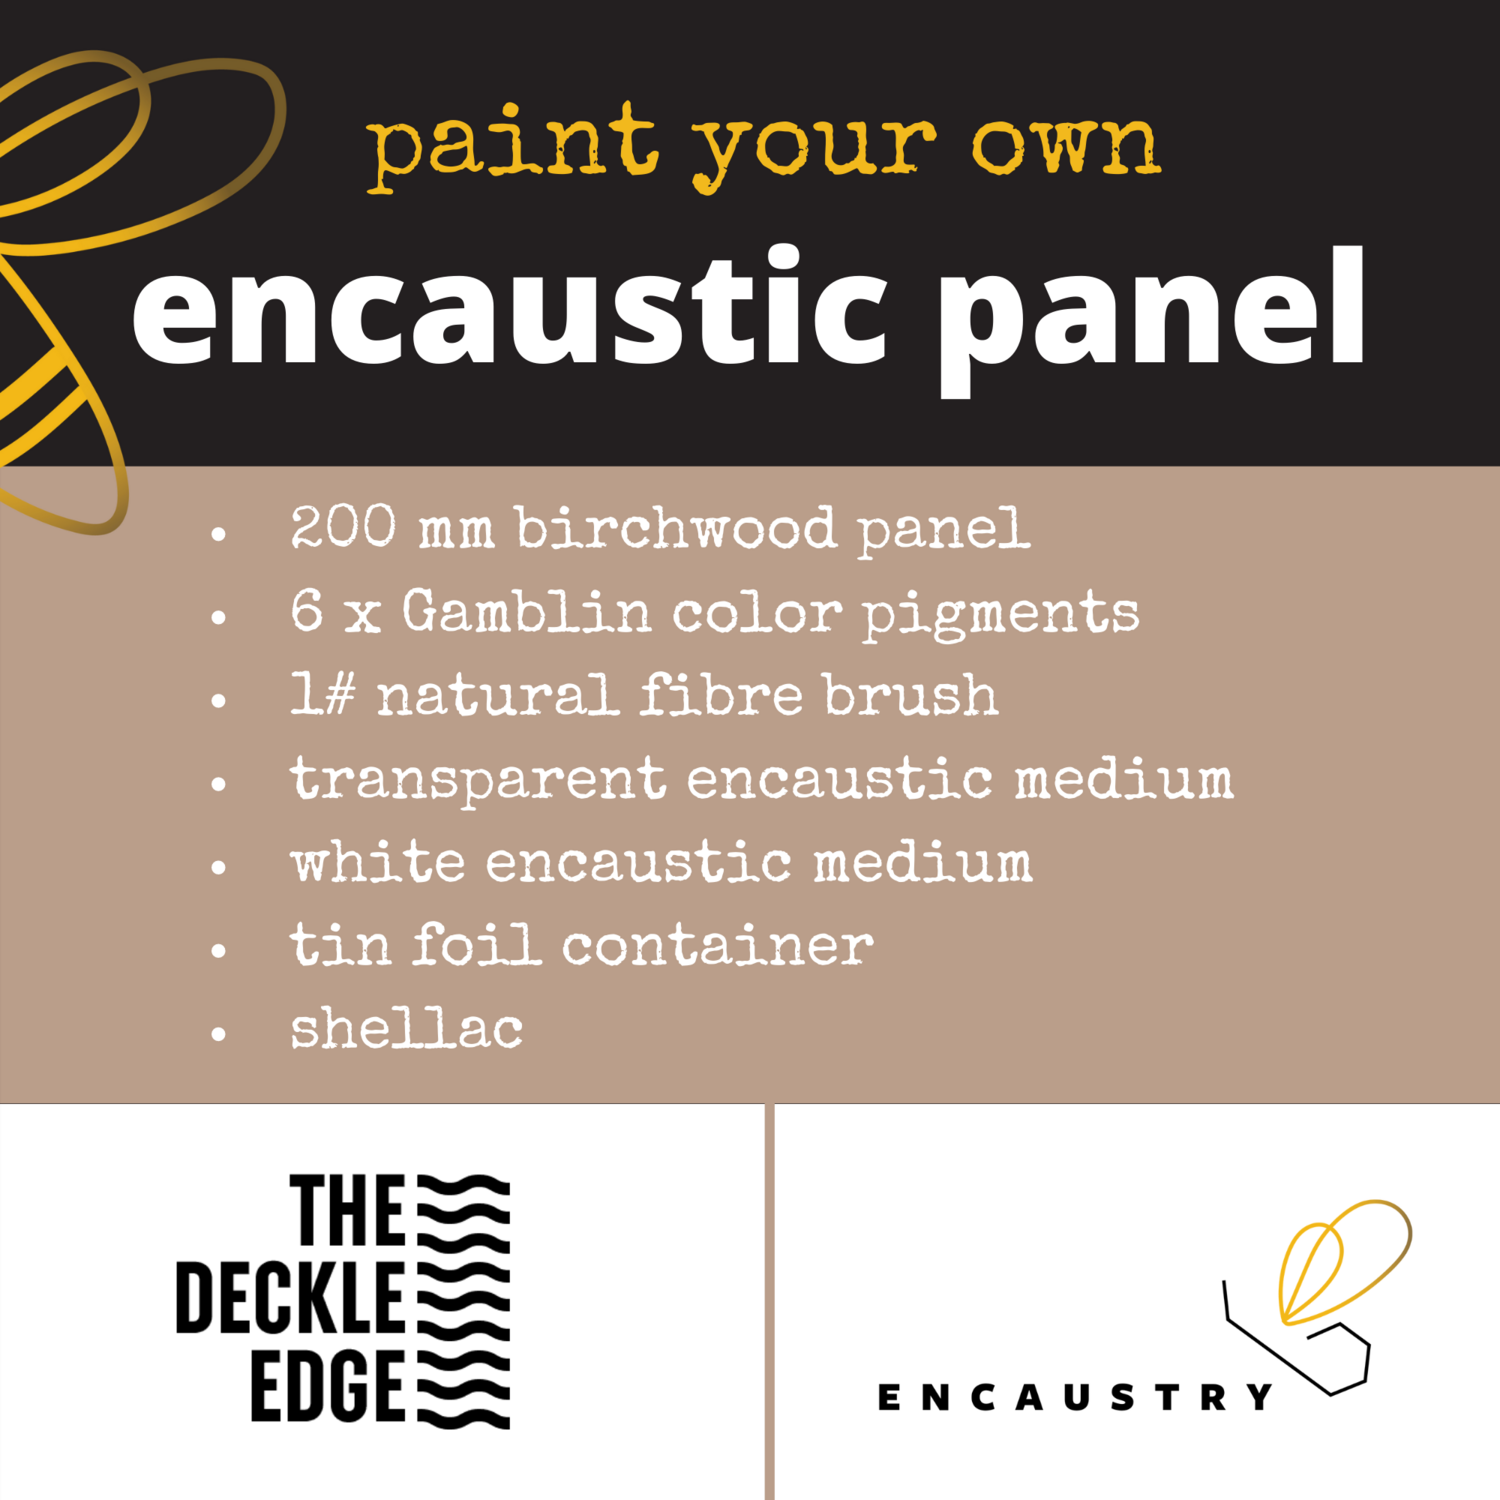 Paint your own encaustic panel